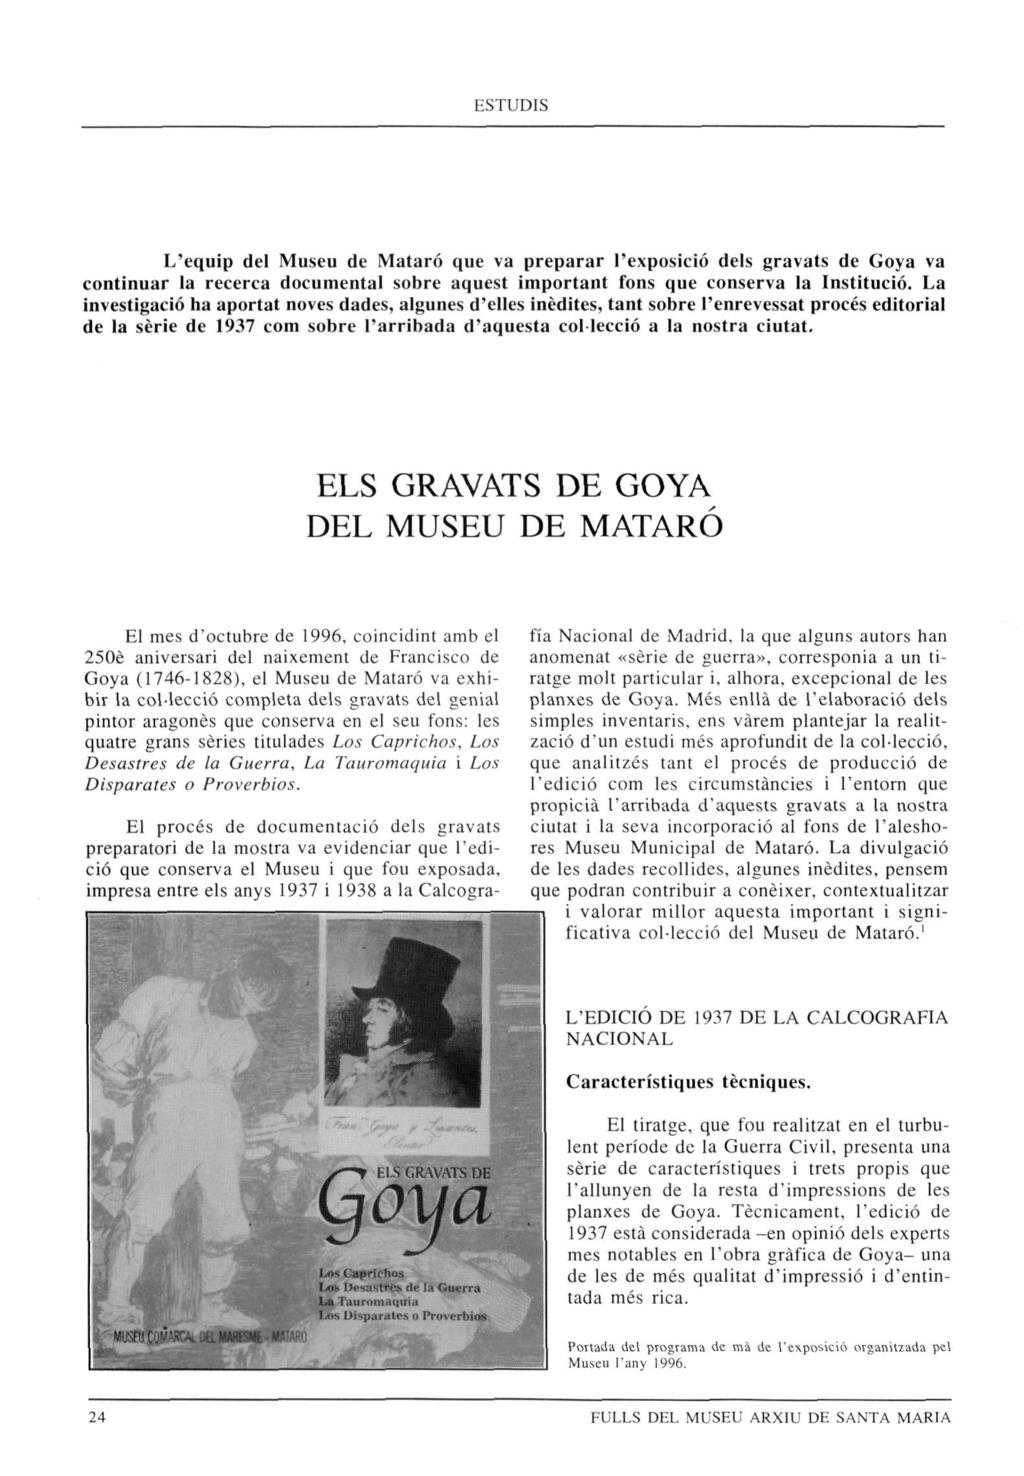 L'equip del Museu de Mataró que va preparar l'exposició dels gravats de Goya va continuar la recerca documental sobre aquest important fons que conserva la Institució.